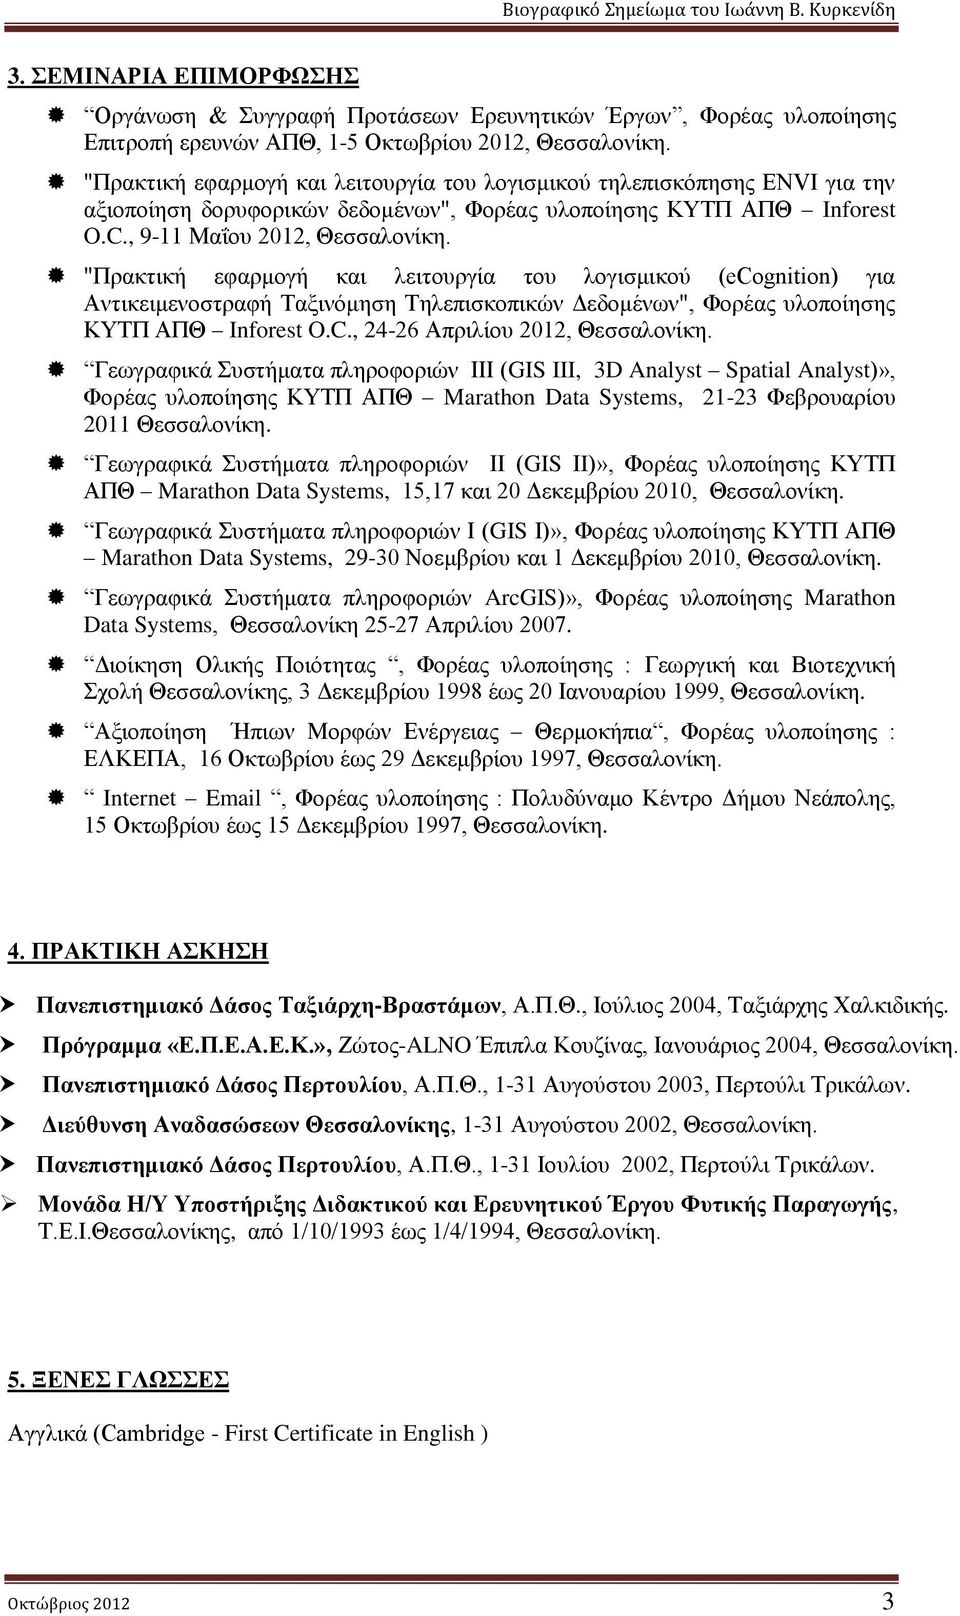 "Πρακτική εφαρμογή και λειτουργία του λογισμικού (ecgnitin) για Αντικειμενοστραφή Ταξινόμηση Τηλεπισκοπικών Δεδομένων", Φορέας υλοποίησης ΚΥΤΠ ΑΠΘ Infrest O.C., 24-26 Απριλίου 2012, Θεσσαλονίκη.